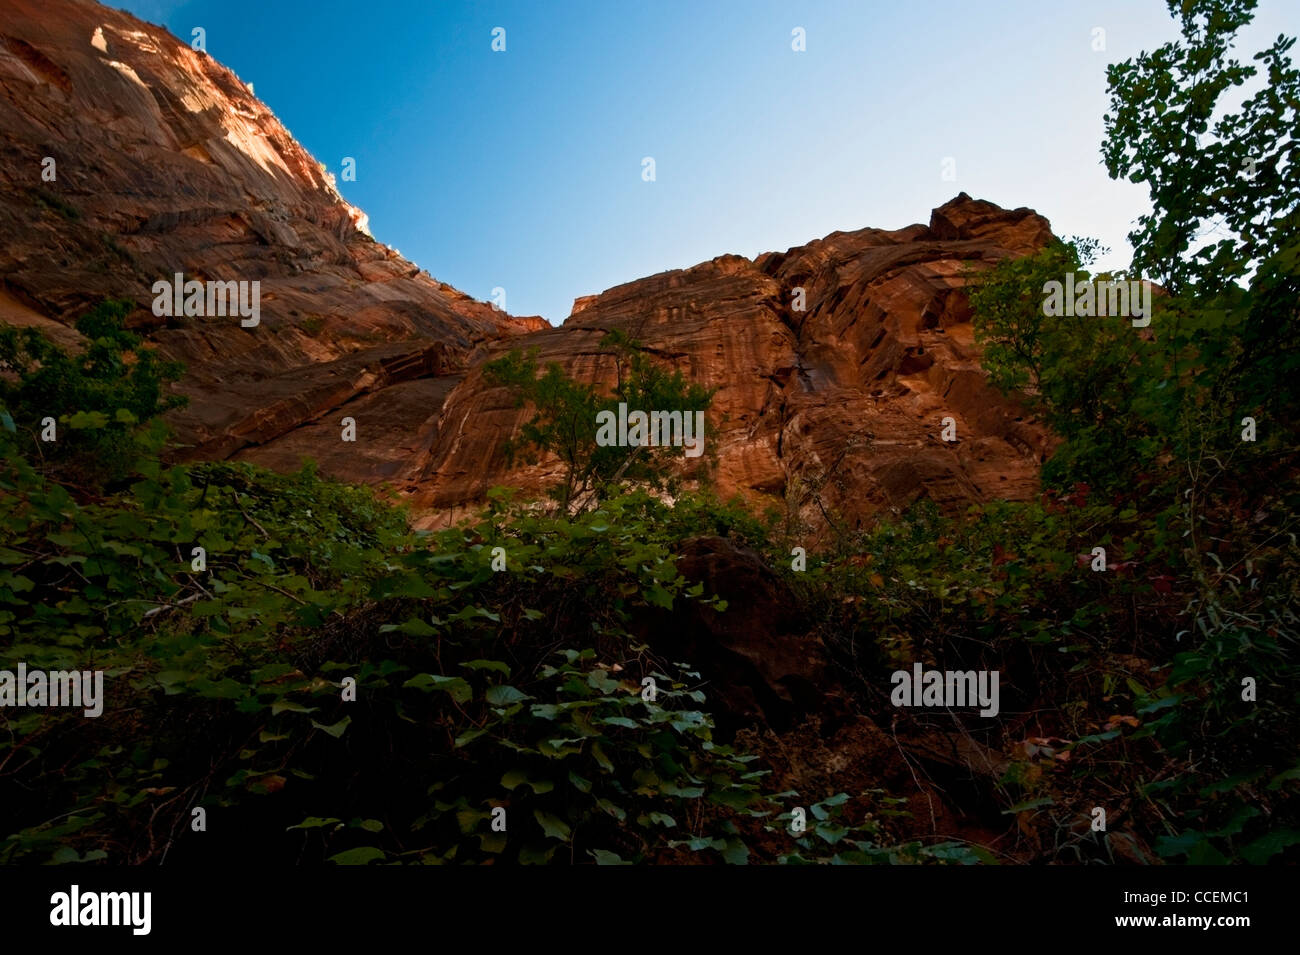 Zion National Park, Utah landscape, mountain scape Stock Photo